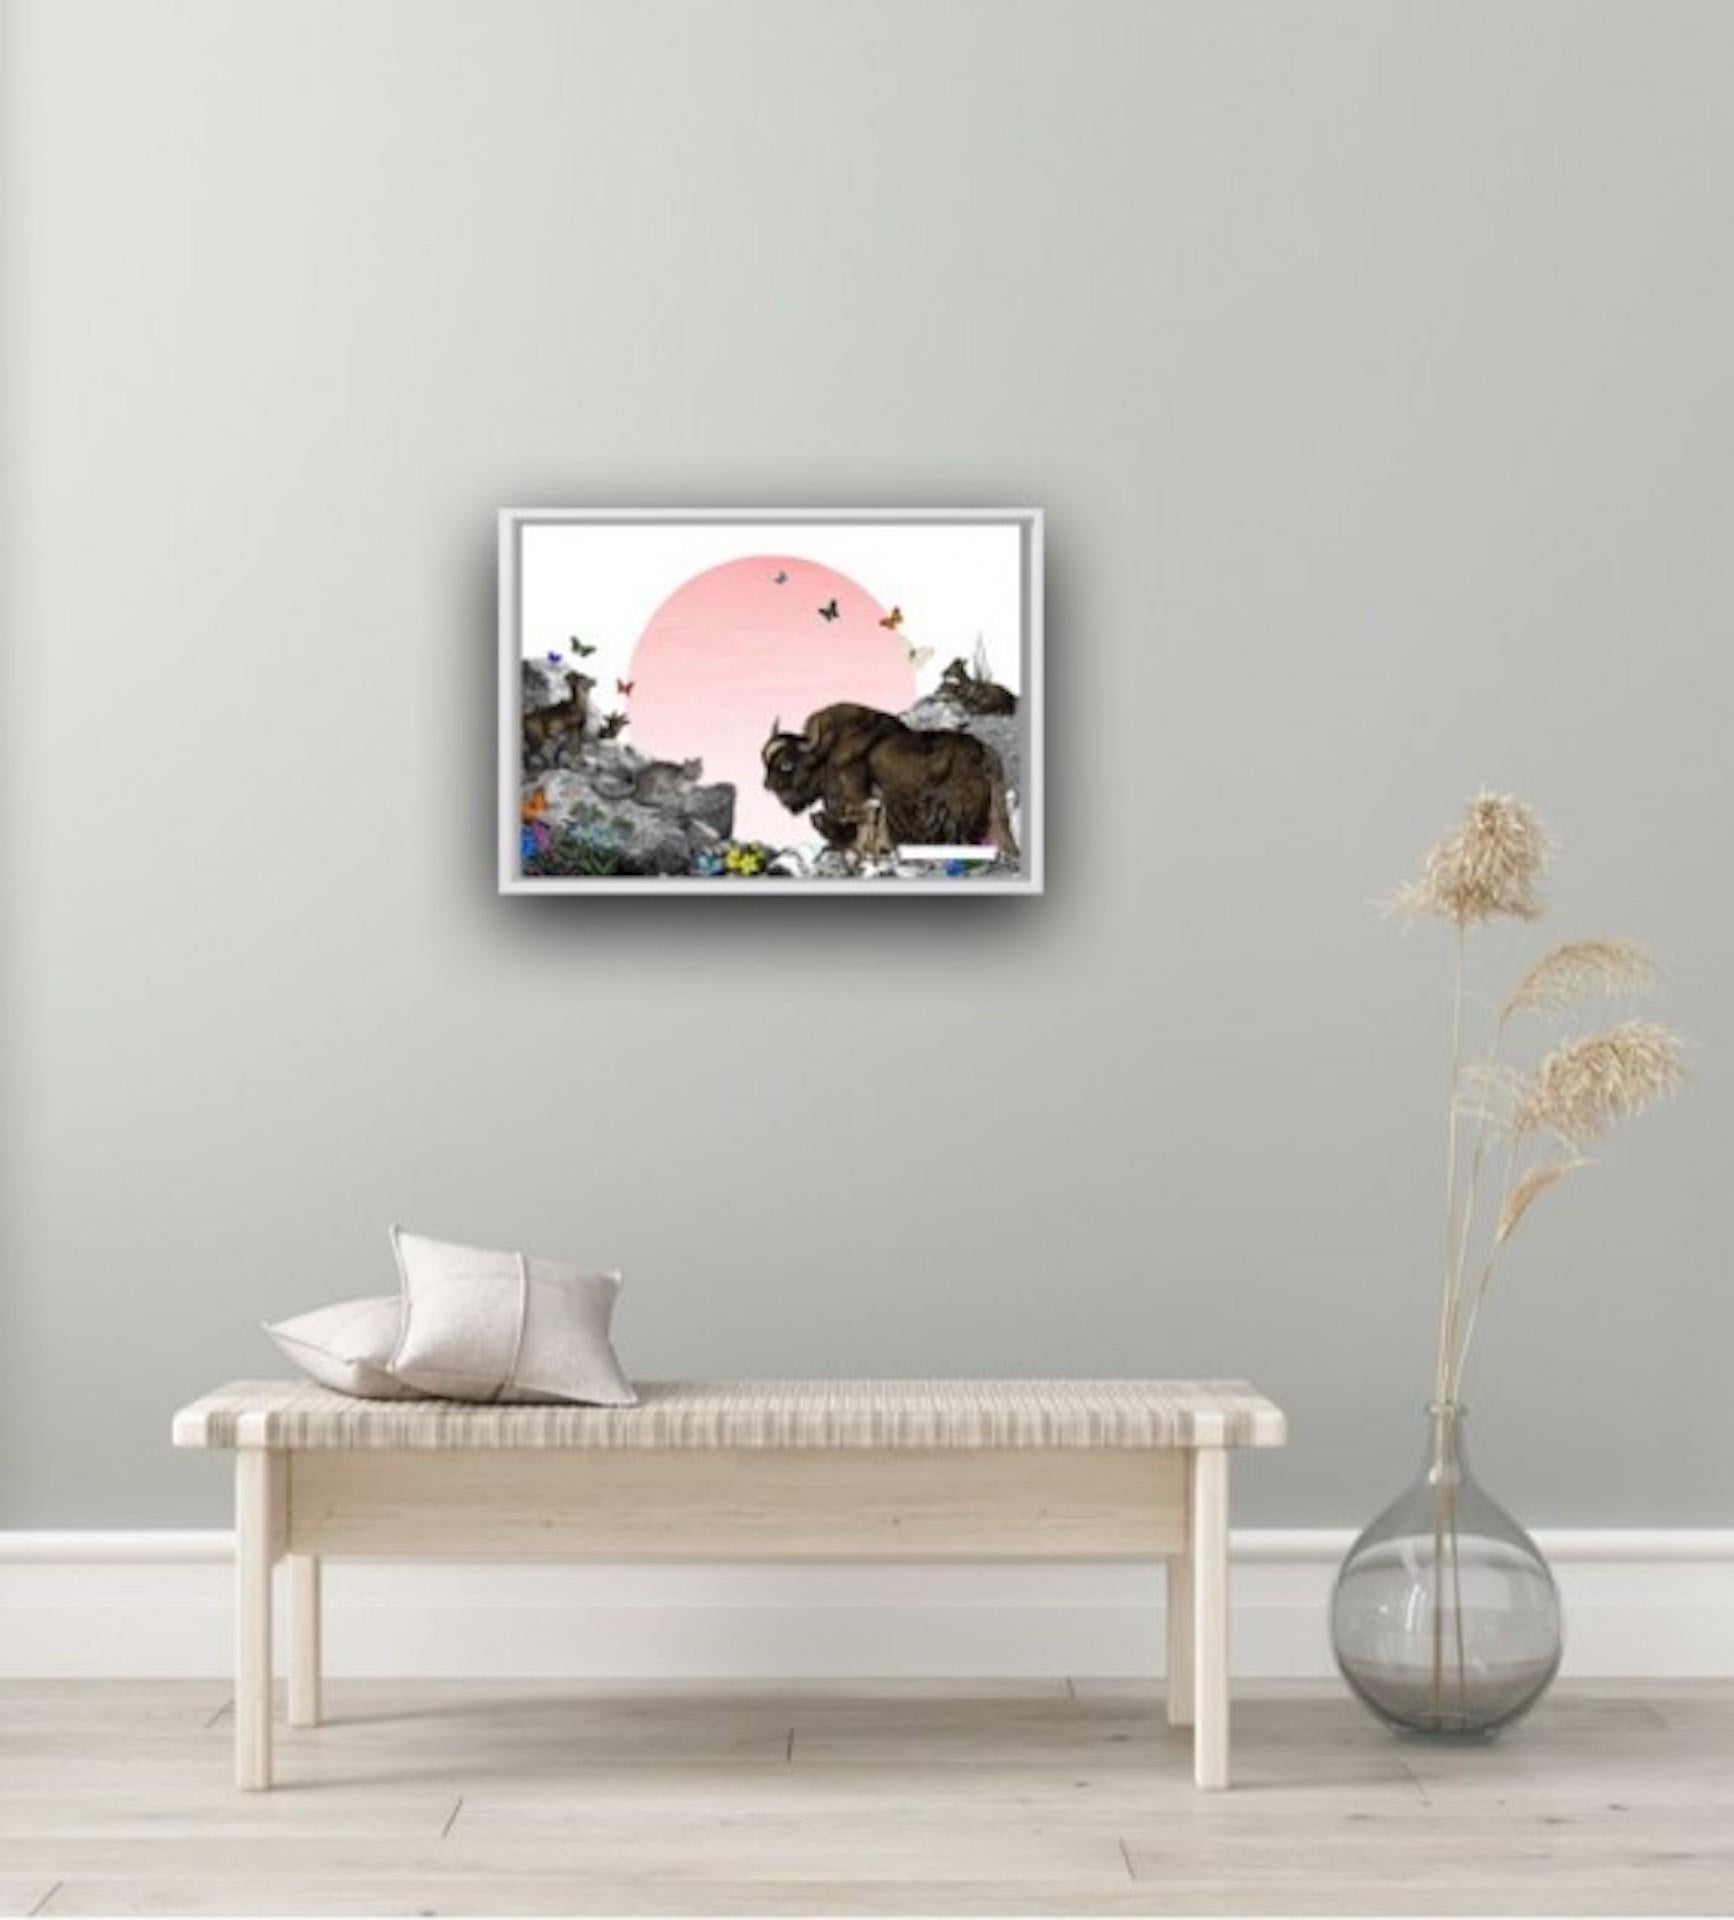 Kristjana Williams, The Himalayan Mountains – Pink Sun, Contemporary Animal Art 6